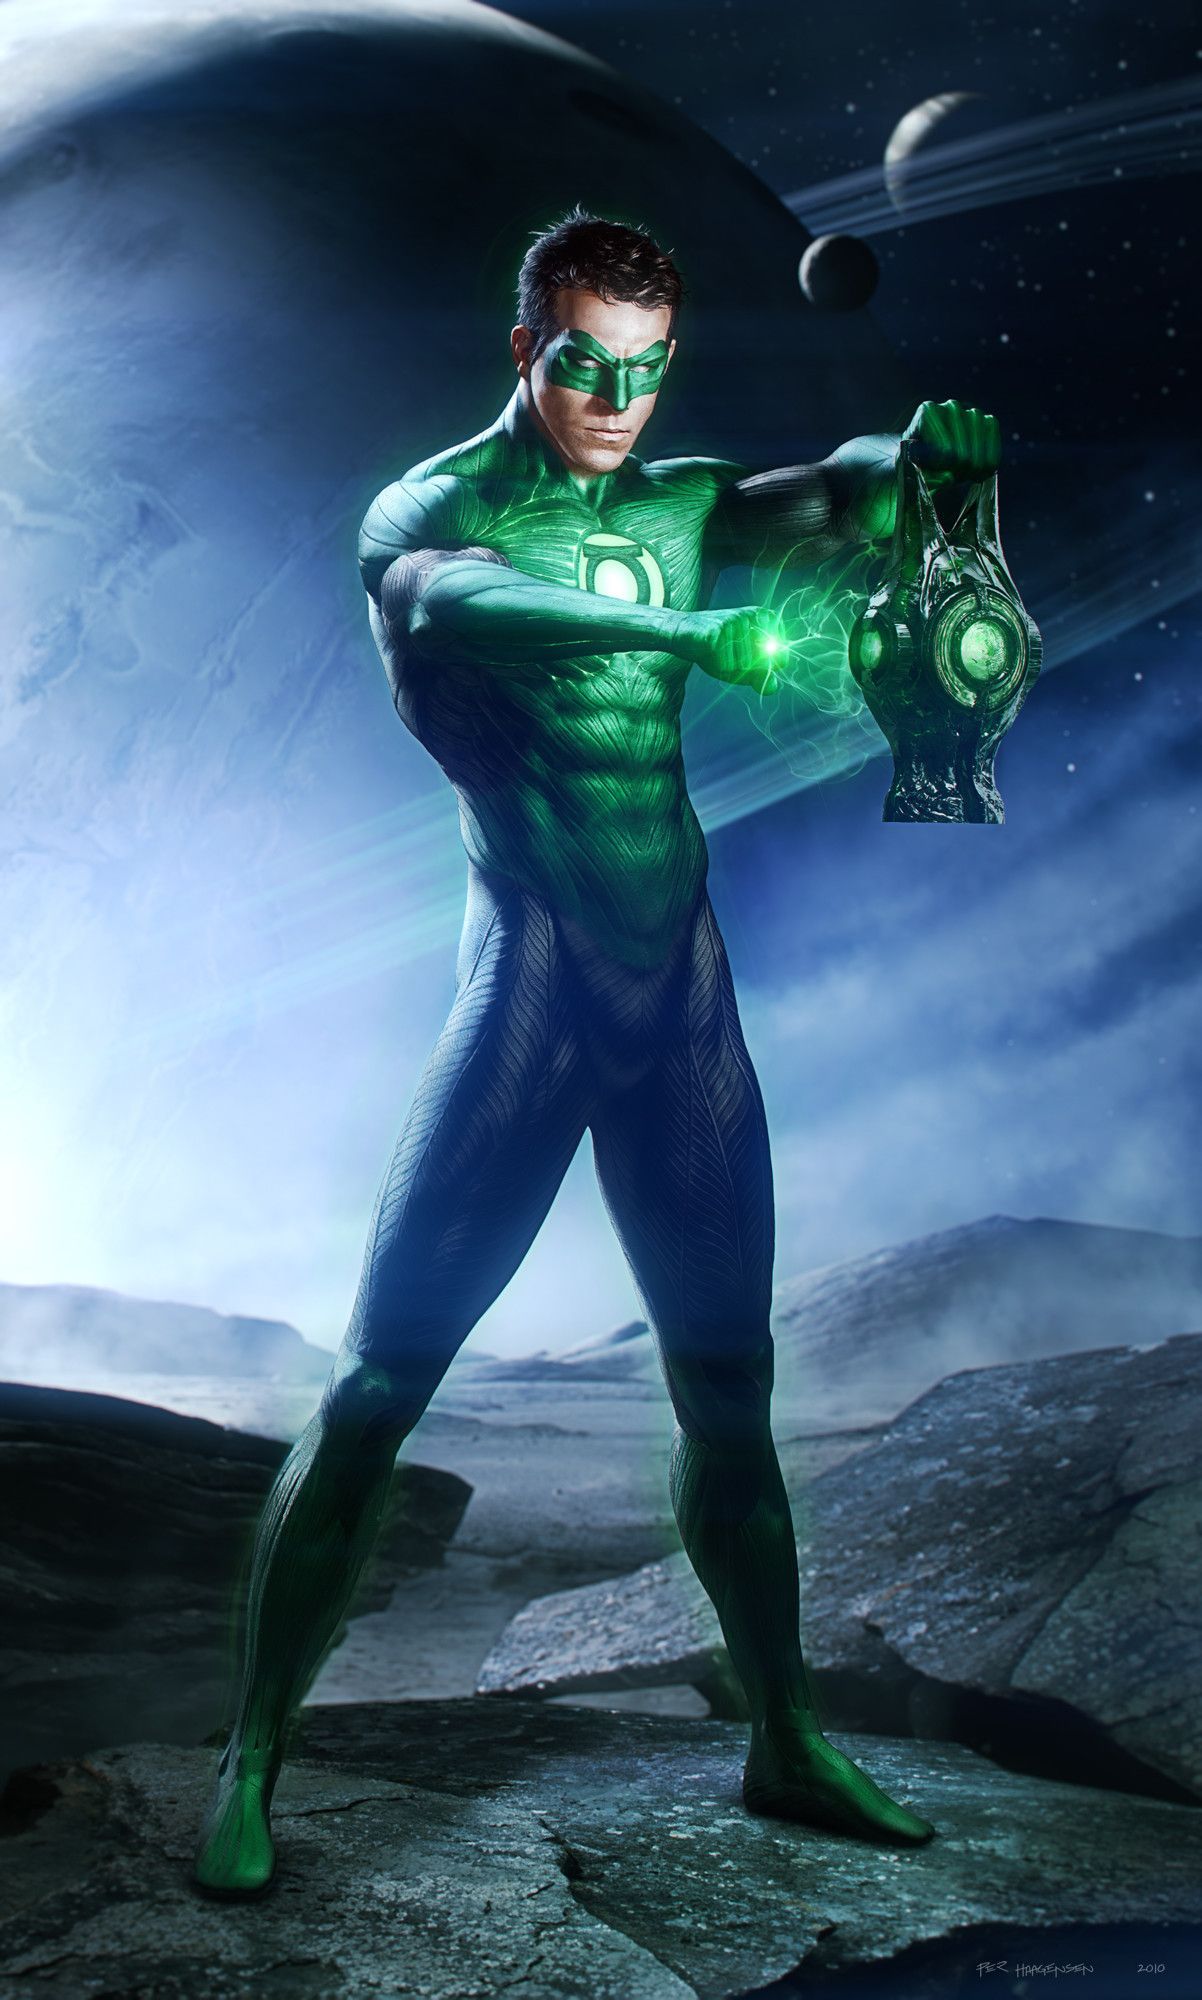 Green Lantern (2011) Artwork Featuring Hal Jordan & Kilowog. Green lantern comics, Green lantern movie, Green lantern 2011